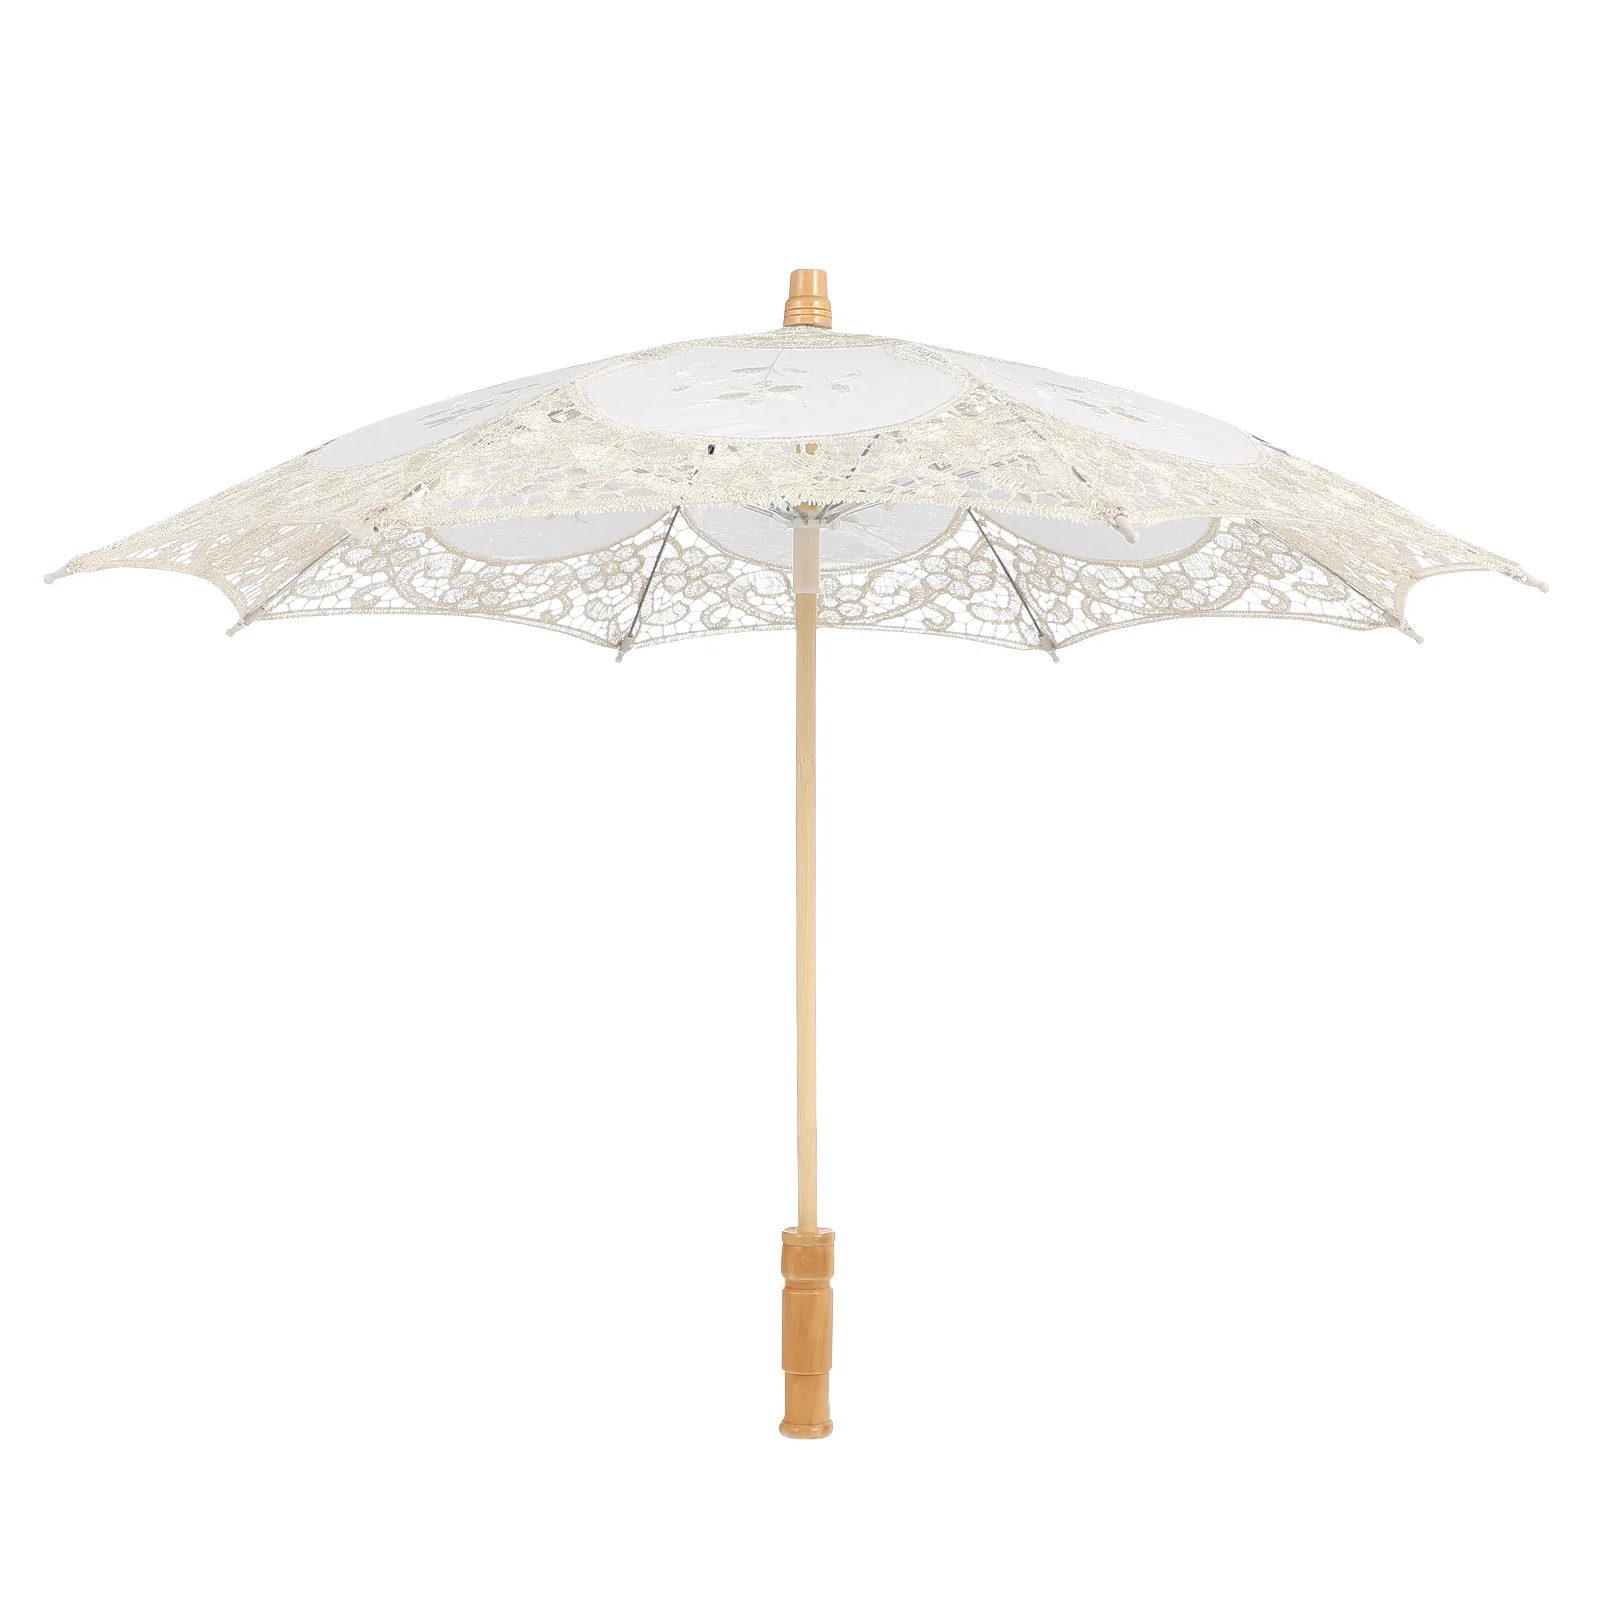 Guarda-chuva de renda bordada para casamento, branco, vintage, algodão, artesanal, decorativo, chá, madeira, para fotografia